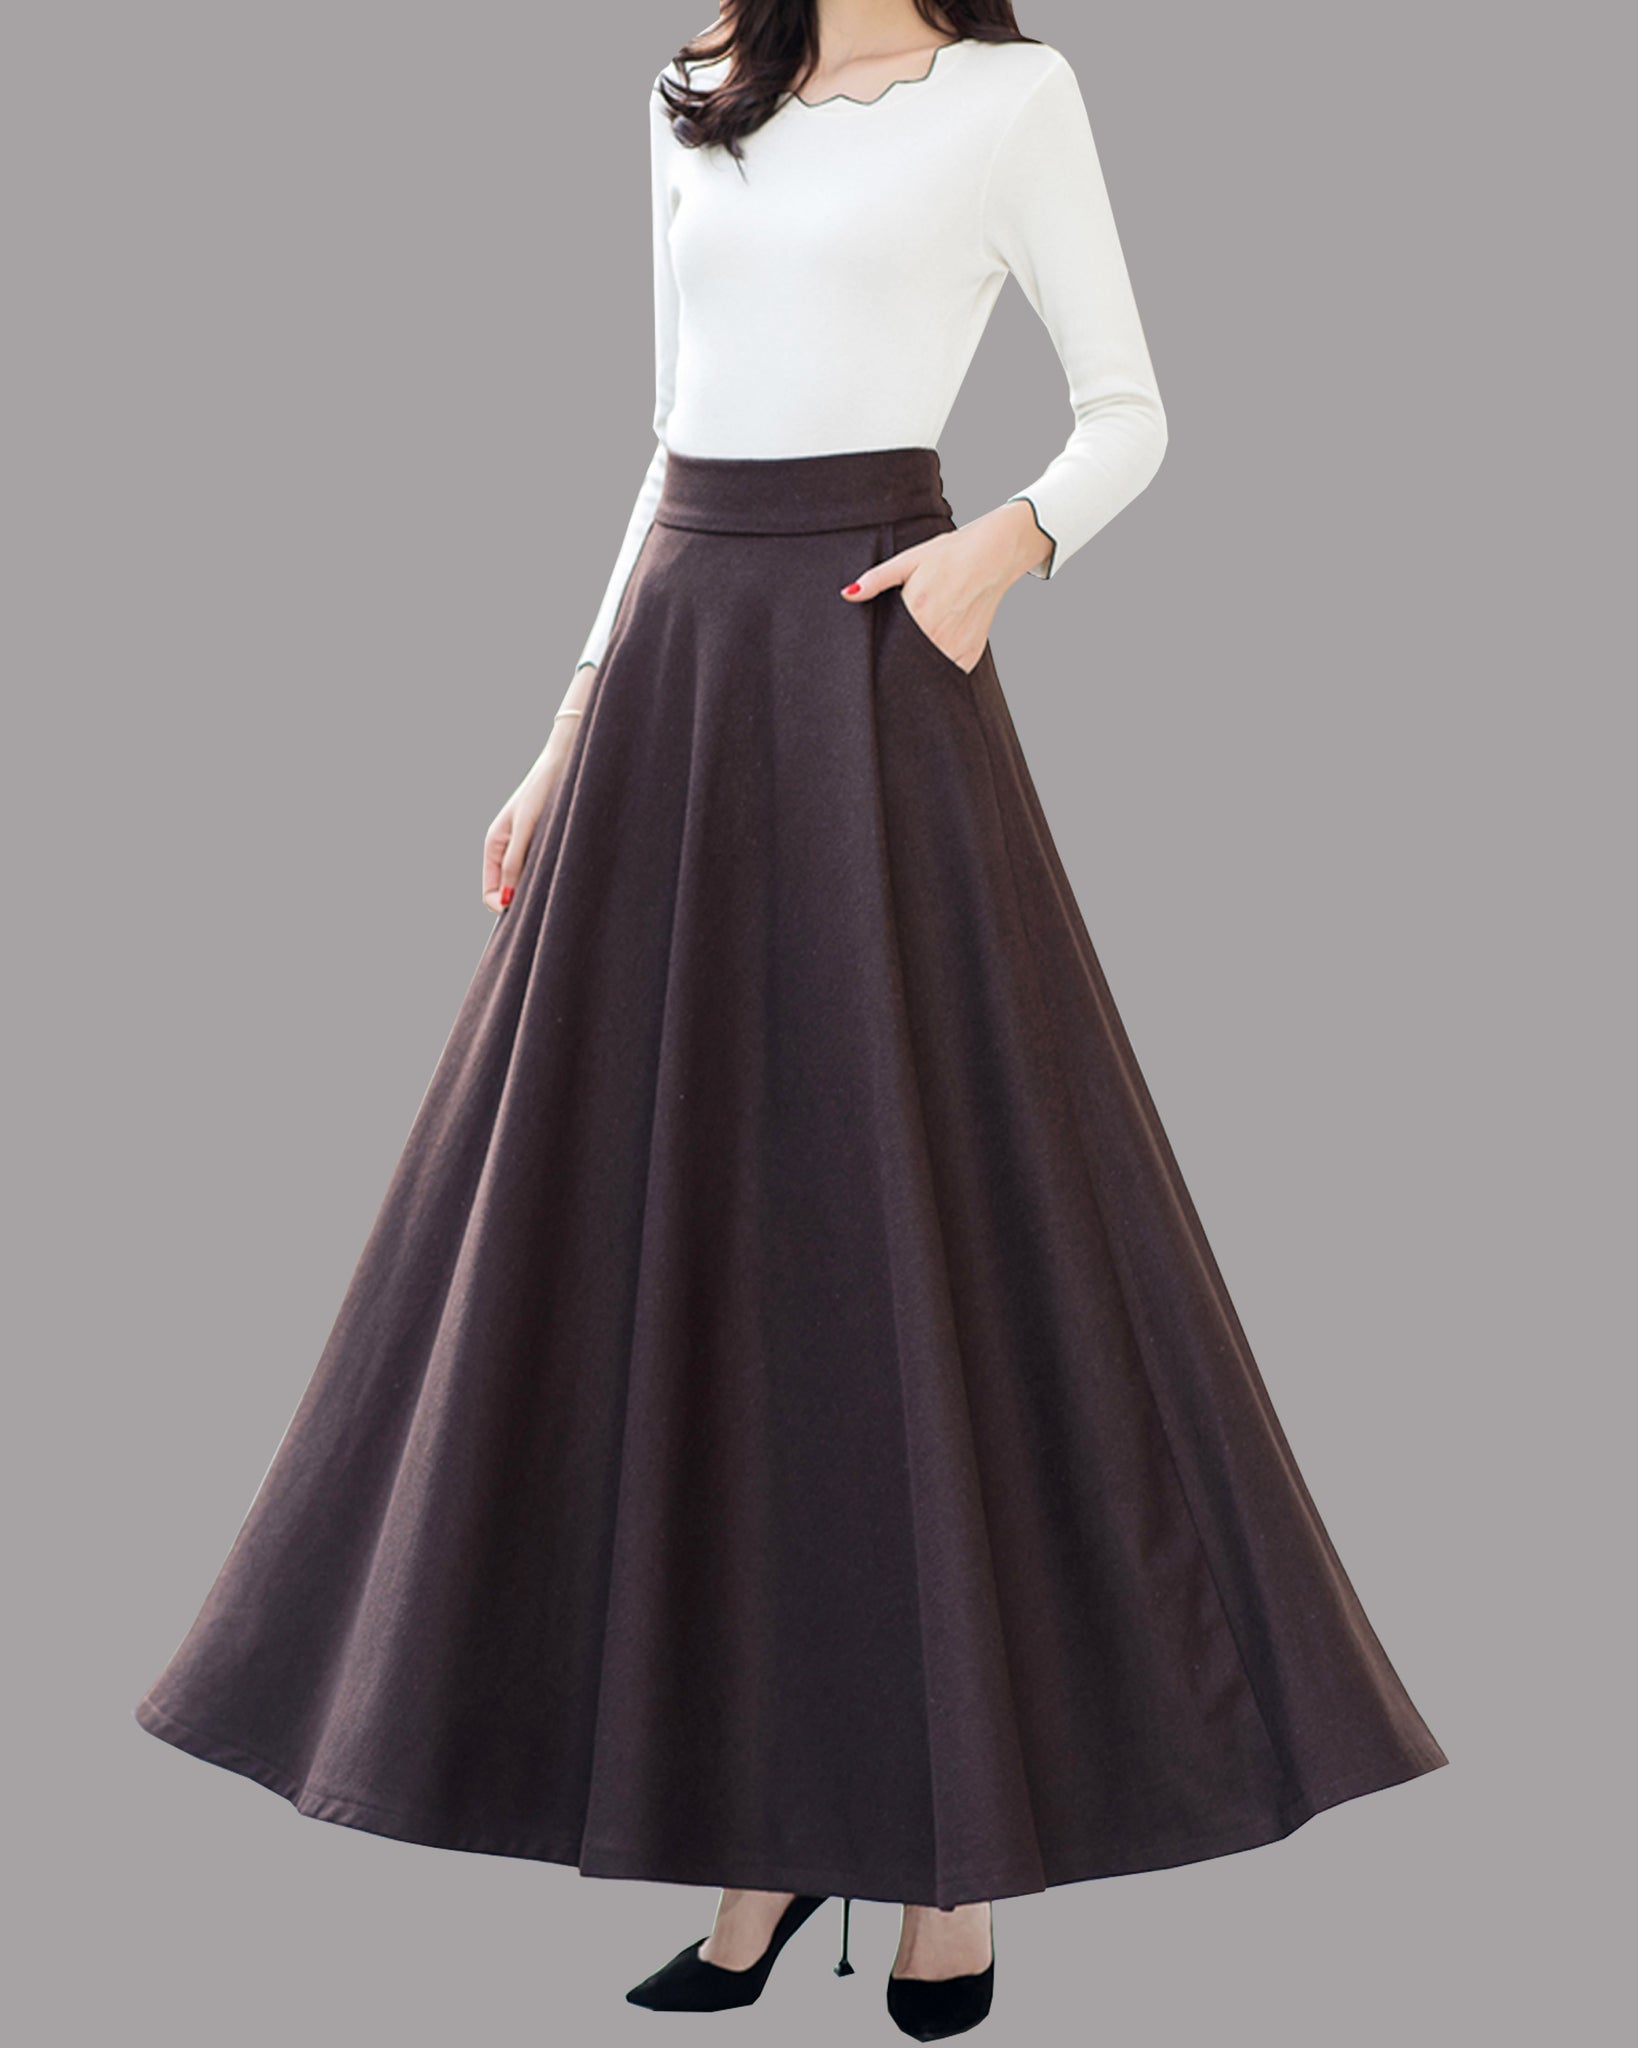 Maxi skirt, Wool skirt, Winter skirt, black skirt, long wool skirt